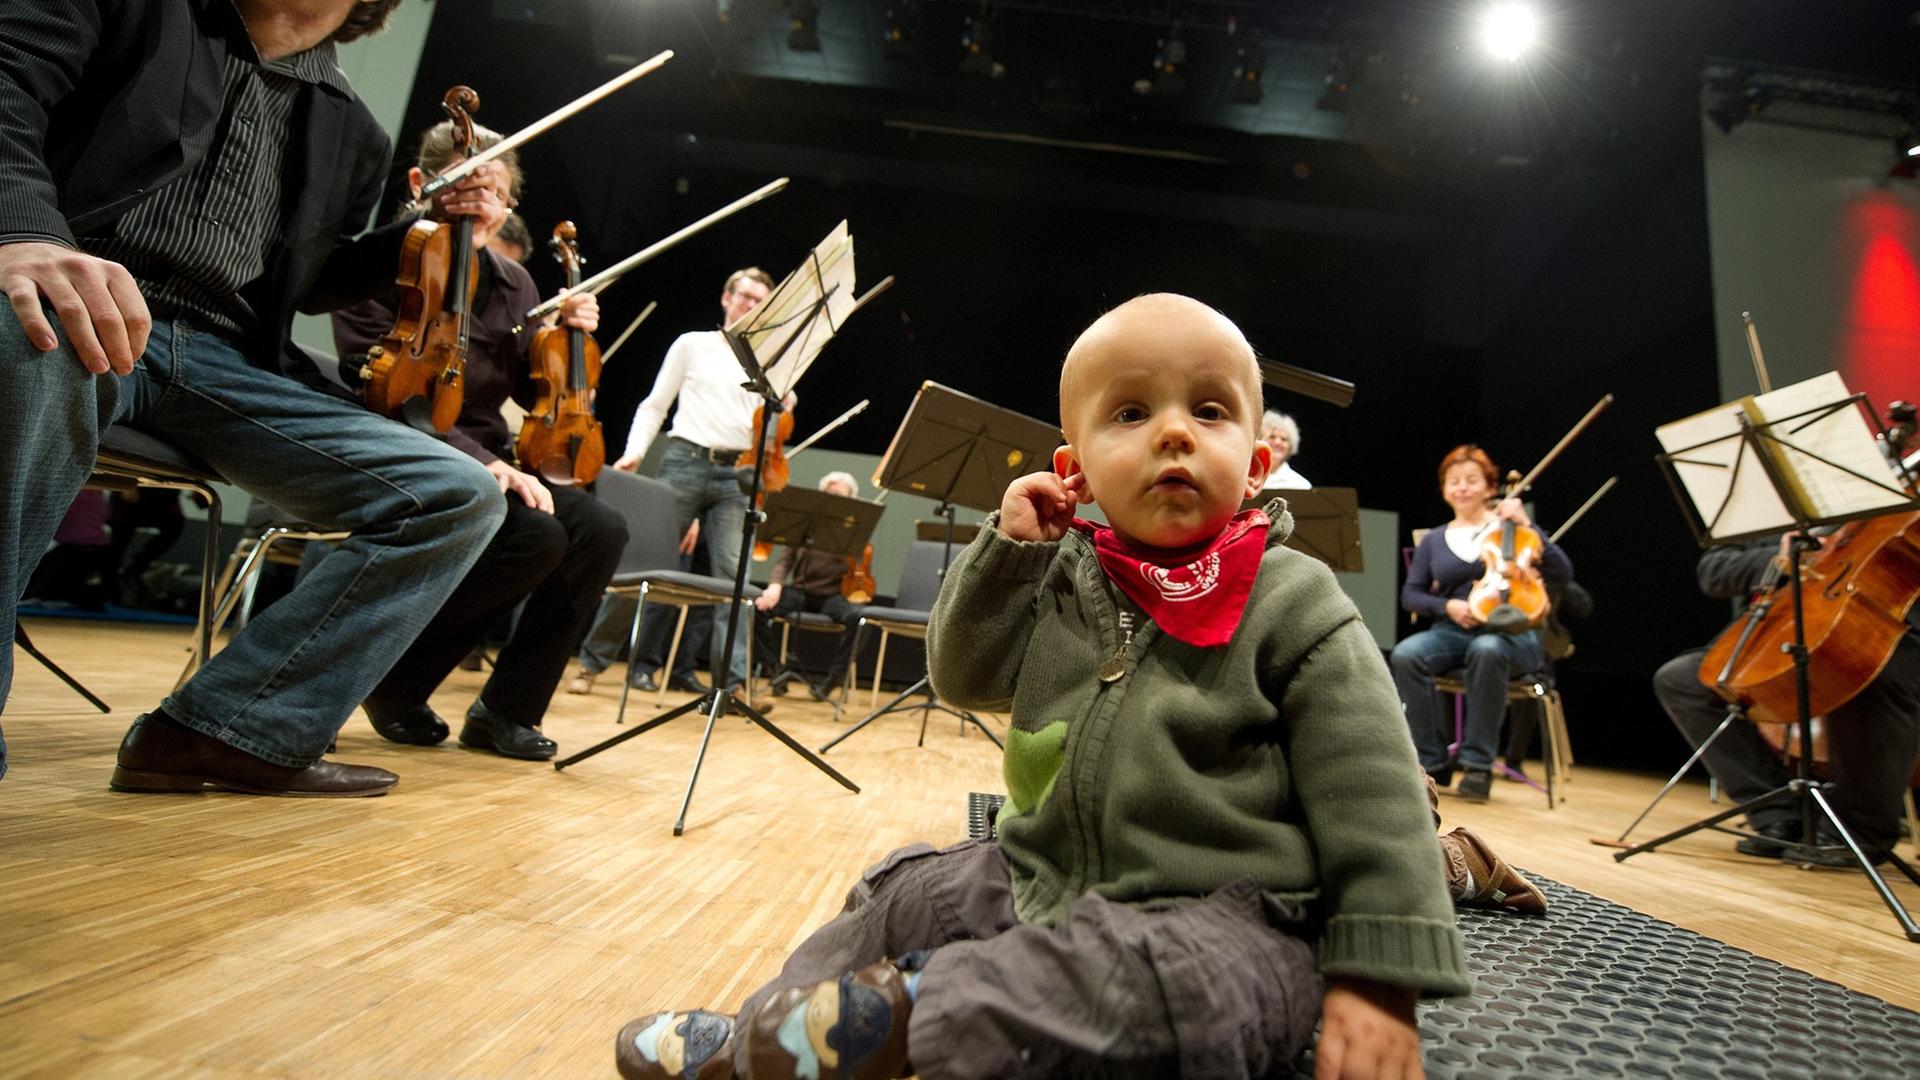 Der kleine Niklas fasst sich am 21.11.2012 in Heilbronn (Baden-Württemberg) vor Beginn des Babykonzerts des Württembergischen Kammerorchesters Heilbronn an sein Ohr. Eltern mit ihren Babys besuchten das ausverkaufte Konzert des Orchesters, das klassische Musik spielte.